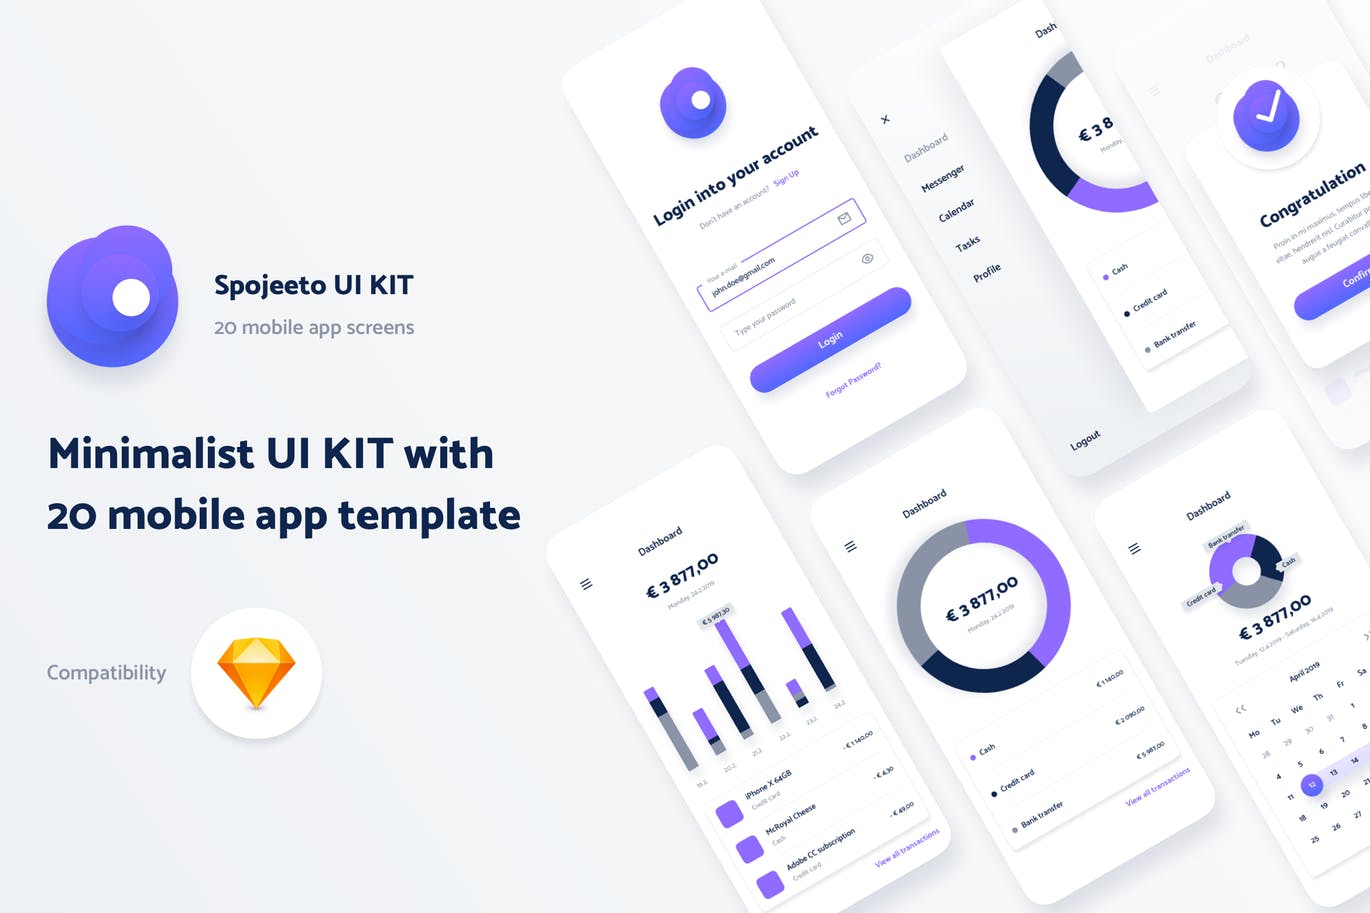 极简主义设计风格APP应用UI设计素材库精选套件v1 Spojeeto Mobile App UI Kit插图